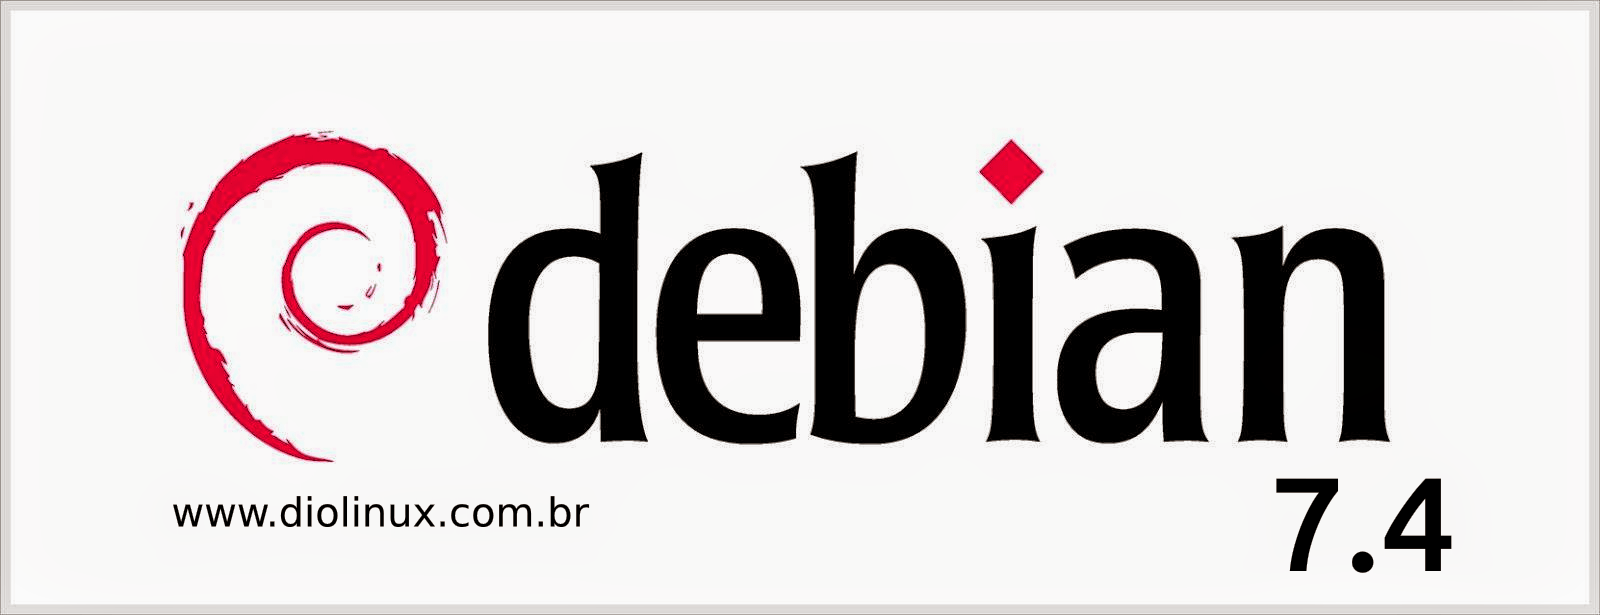 Lançado Debian 7.4 - Confiras as novidades e baixe